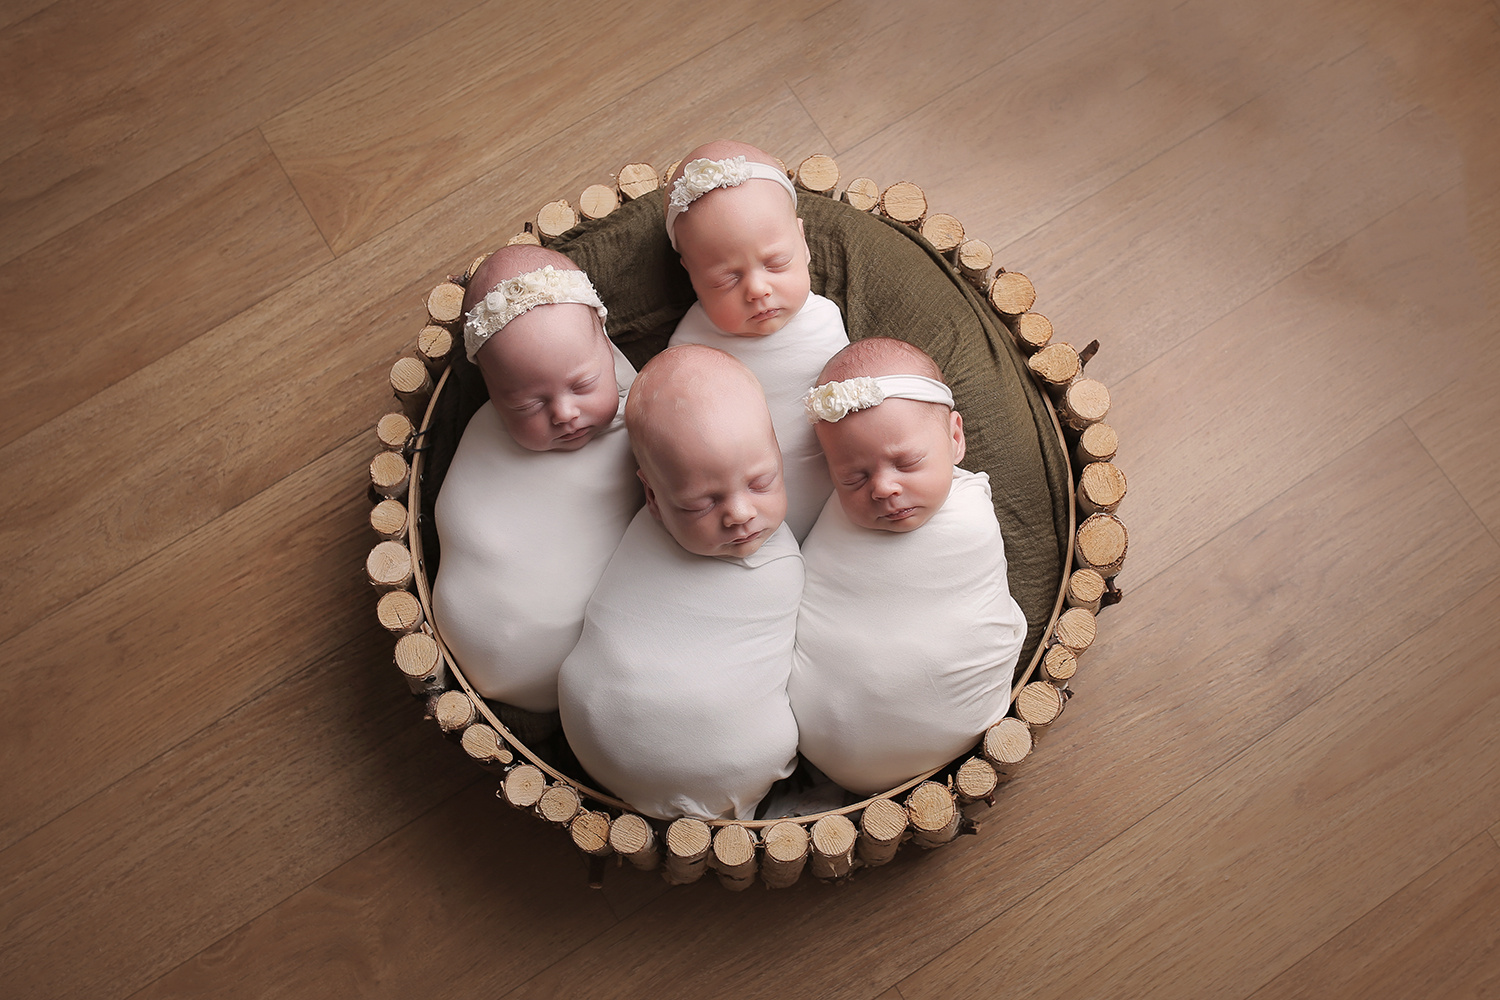 13 апреля 2018 года в Новосибирске родились четверняшки — Катерина, Иван, Алёна и Полина. Перед этим четверняшки появлялись на свет в городе около 10 лет назад